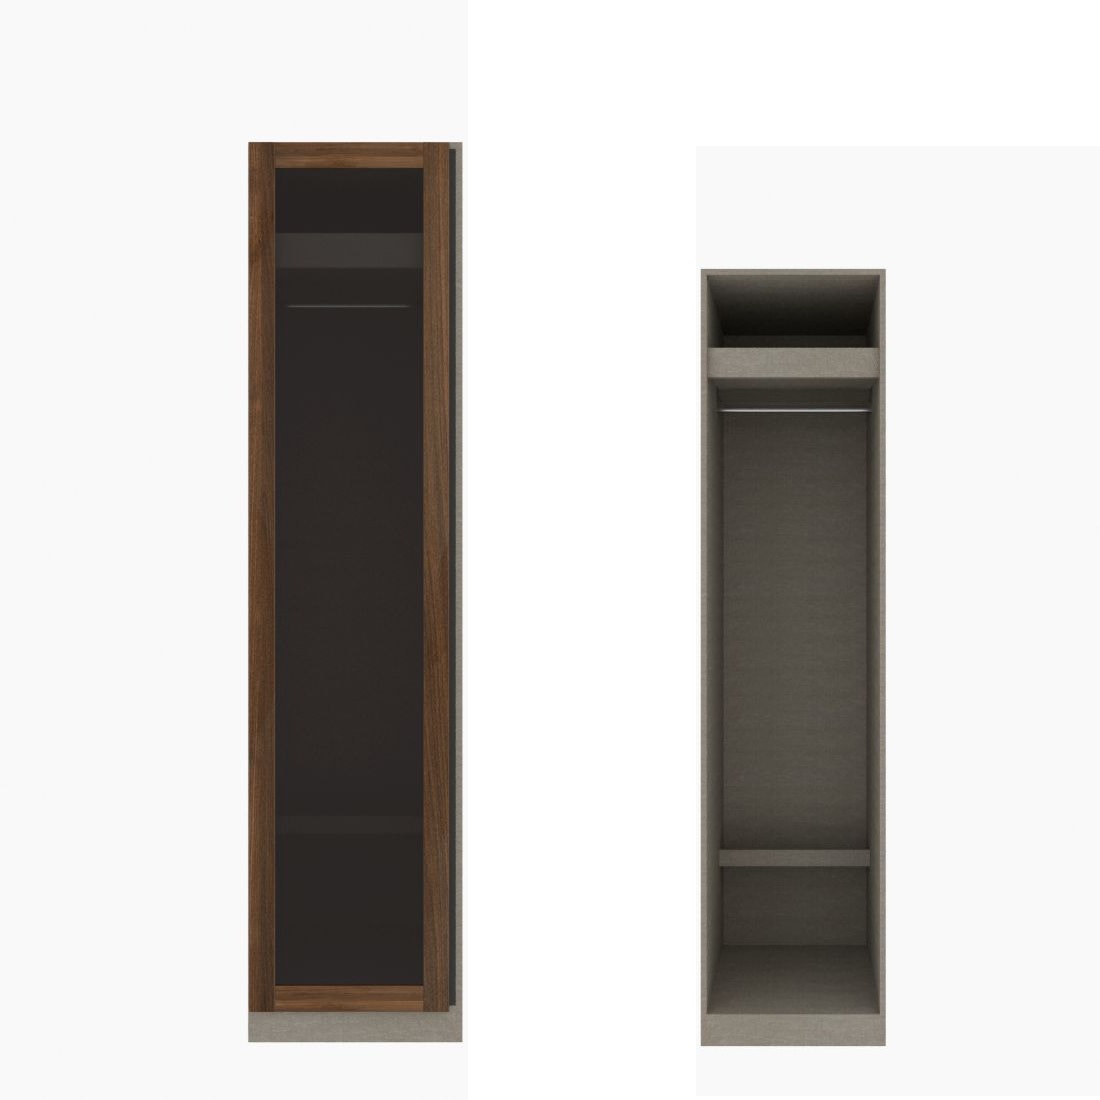 ตู้เสื้อผ้า ราวแขวนโล่ง OP-J (หน้าบานเปิดซ้าย) ขนาด 50 ซม. รุ่น Blox สีไม้เข้ม&กระจกชาดำ01